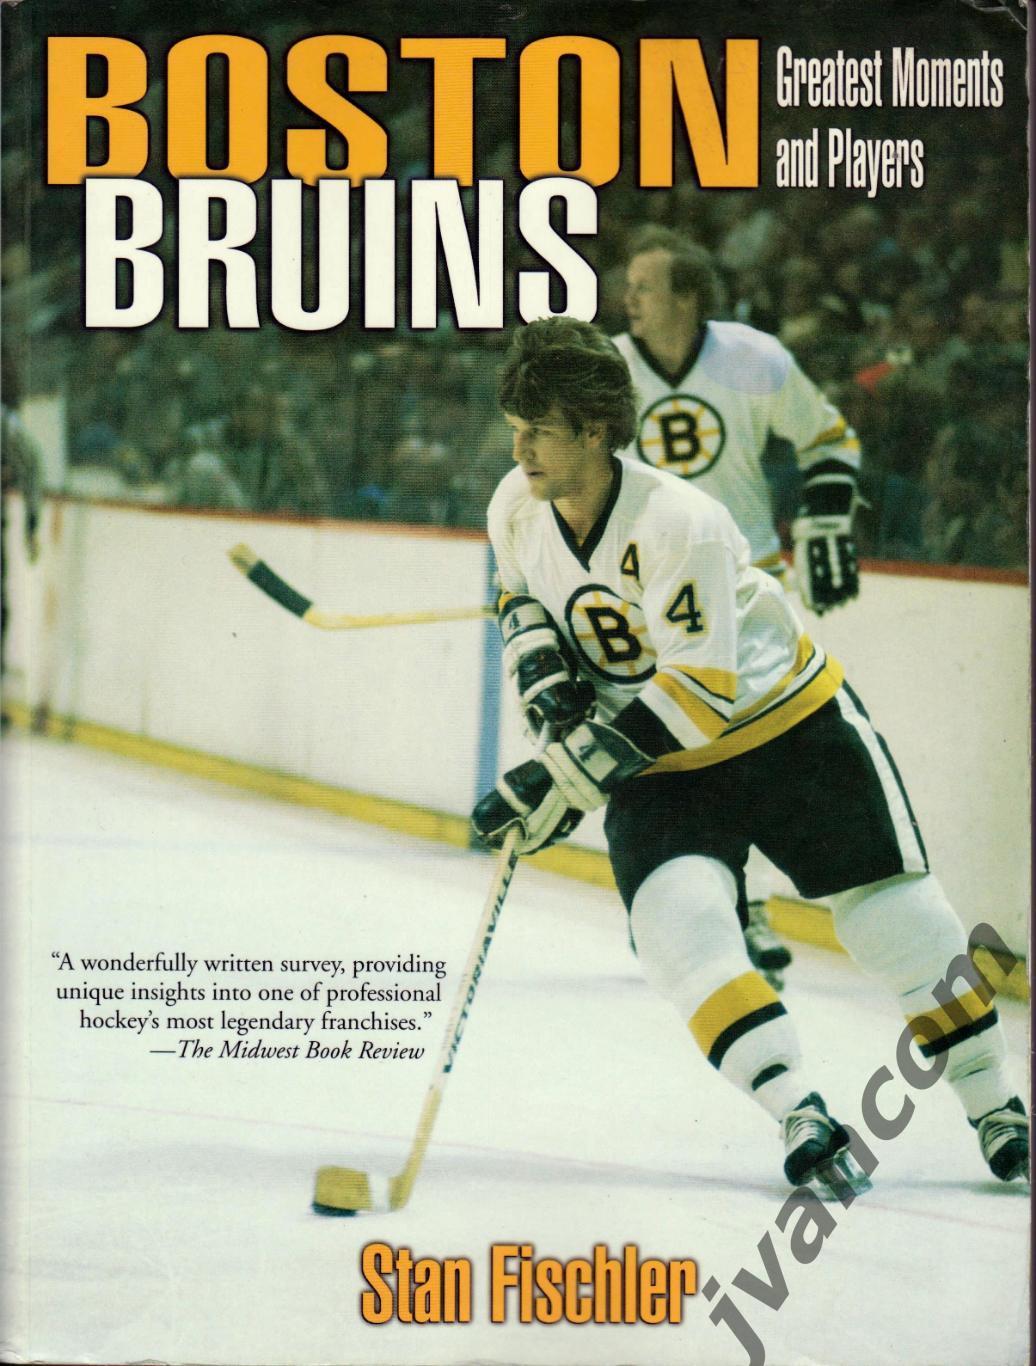 Хоккей. НХЛ - Бостон Брюинз - Величайшие моменты и игроки, 2001 год.